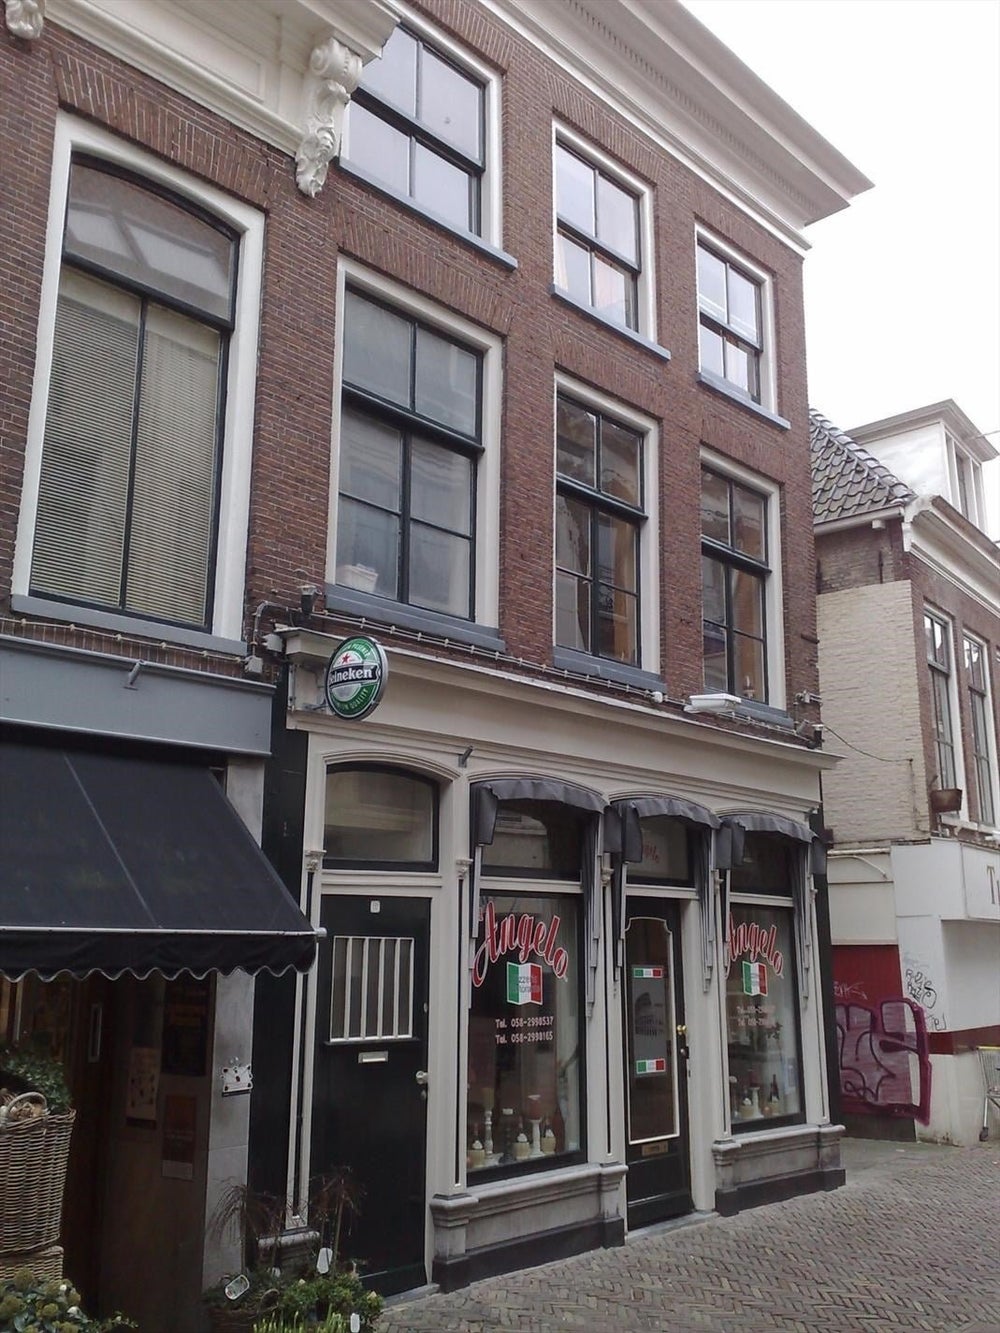 Bekijk foto 1/3 van apartment in Leeuwarden